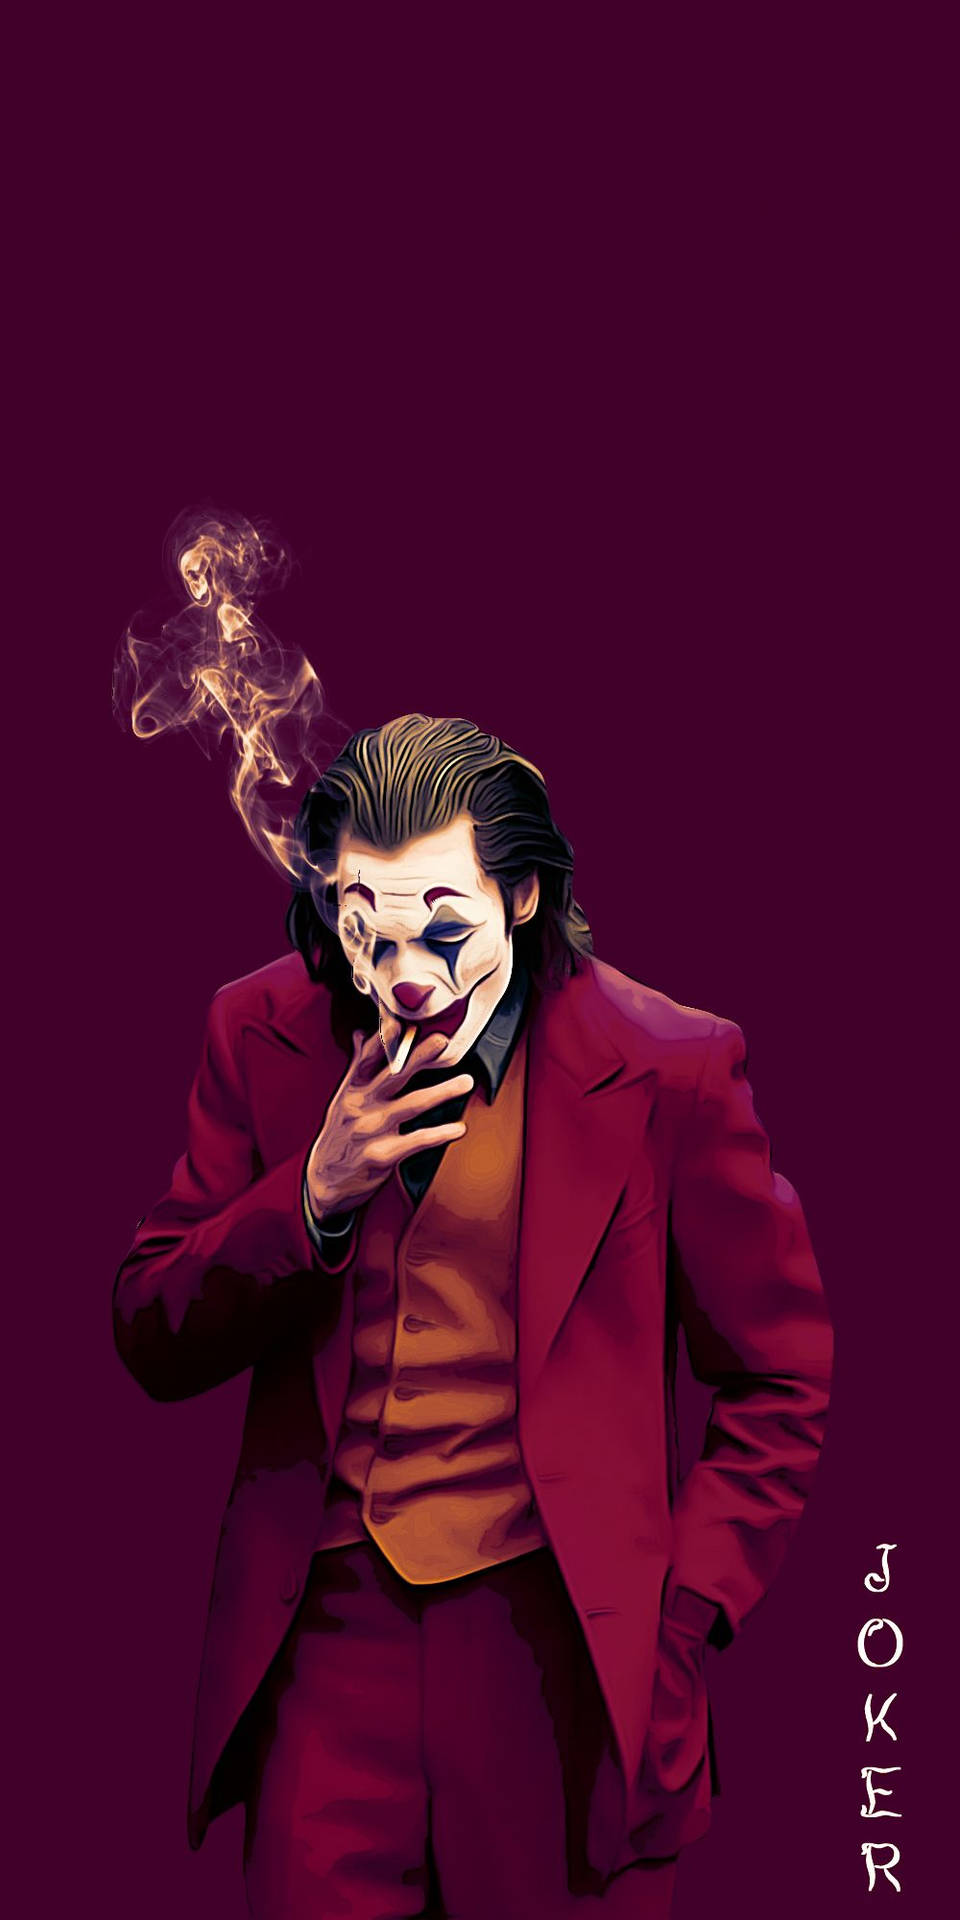 Jokersymboldesign Auf Dem Smartphone Im Ikonischen Roten Anzug Wallpaper